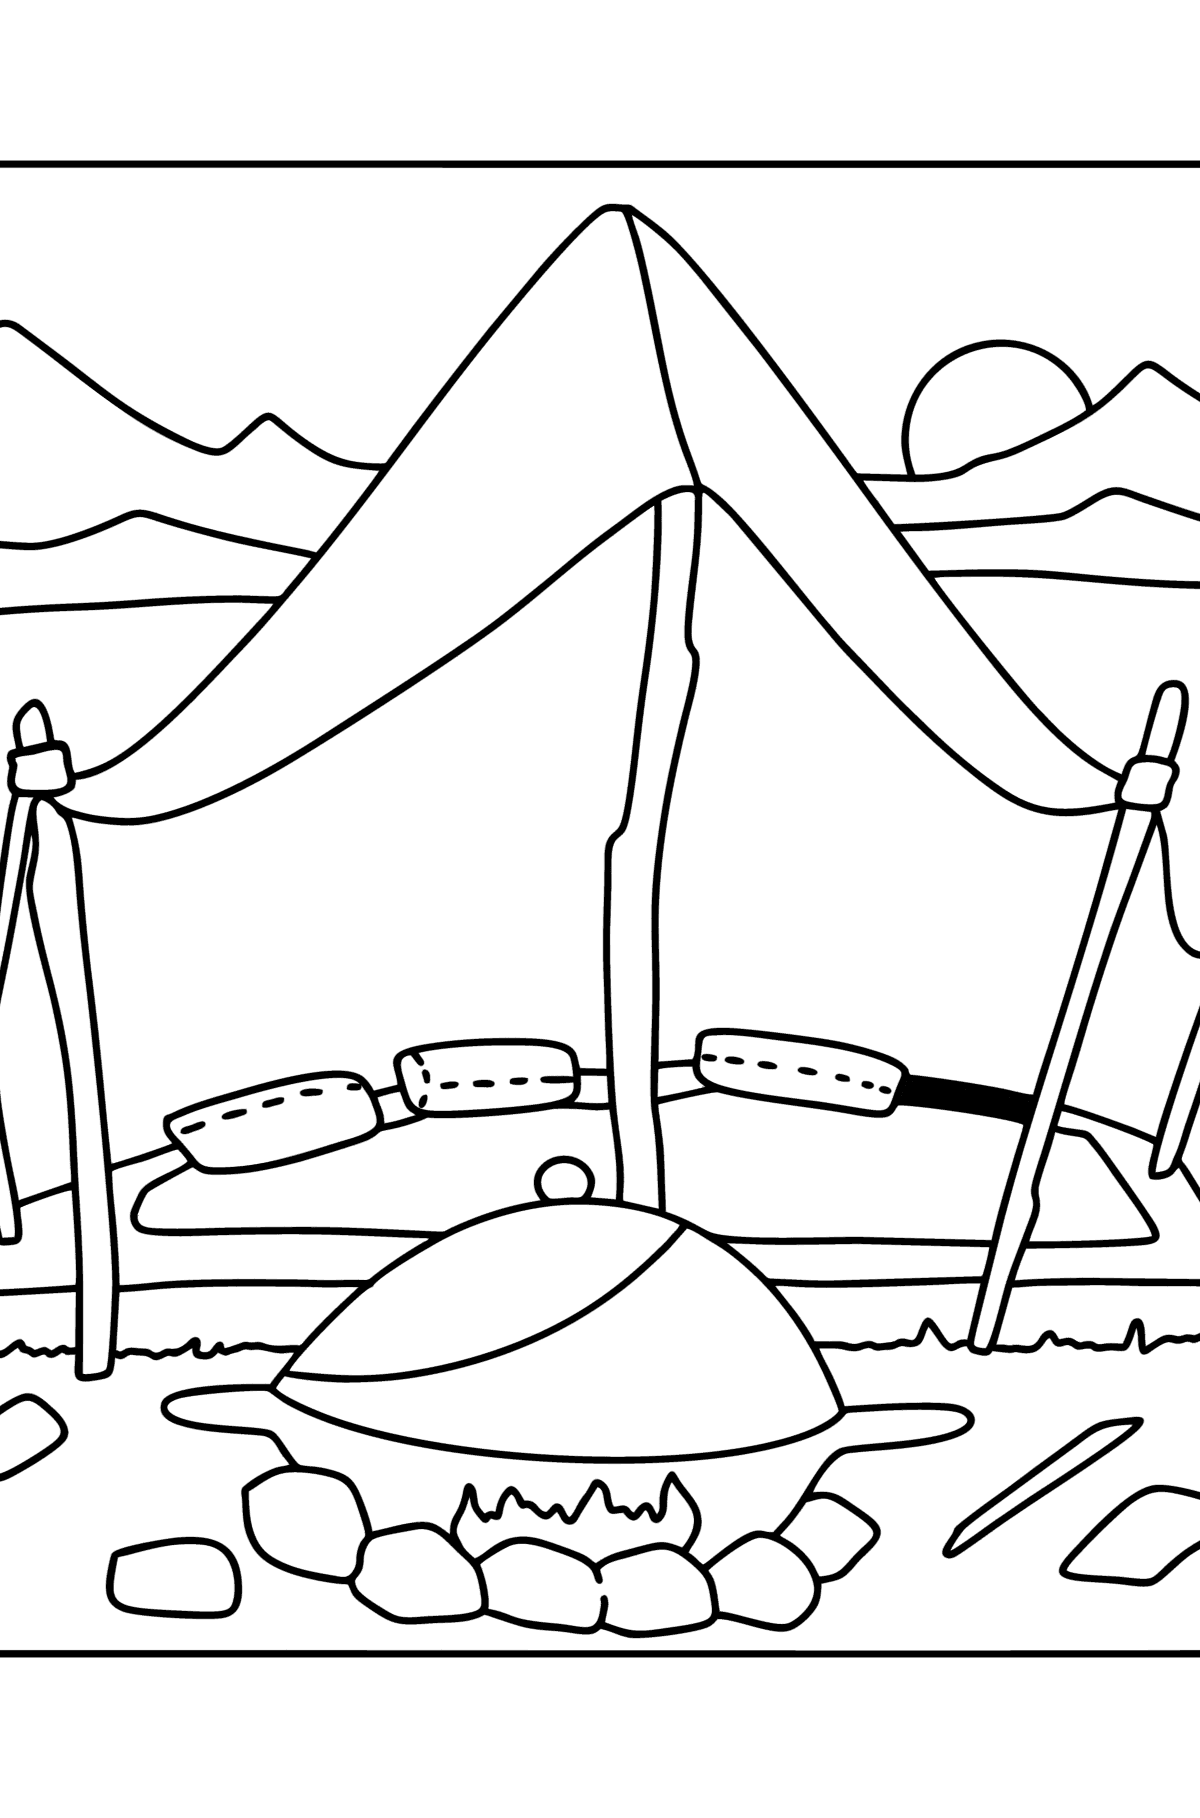 Boyama sayfası bedevi çadırı - Boyamalar çocuklar için